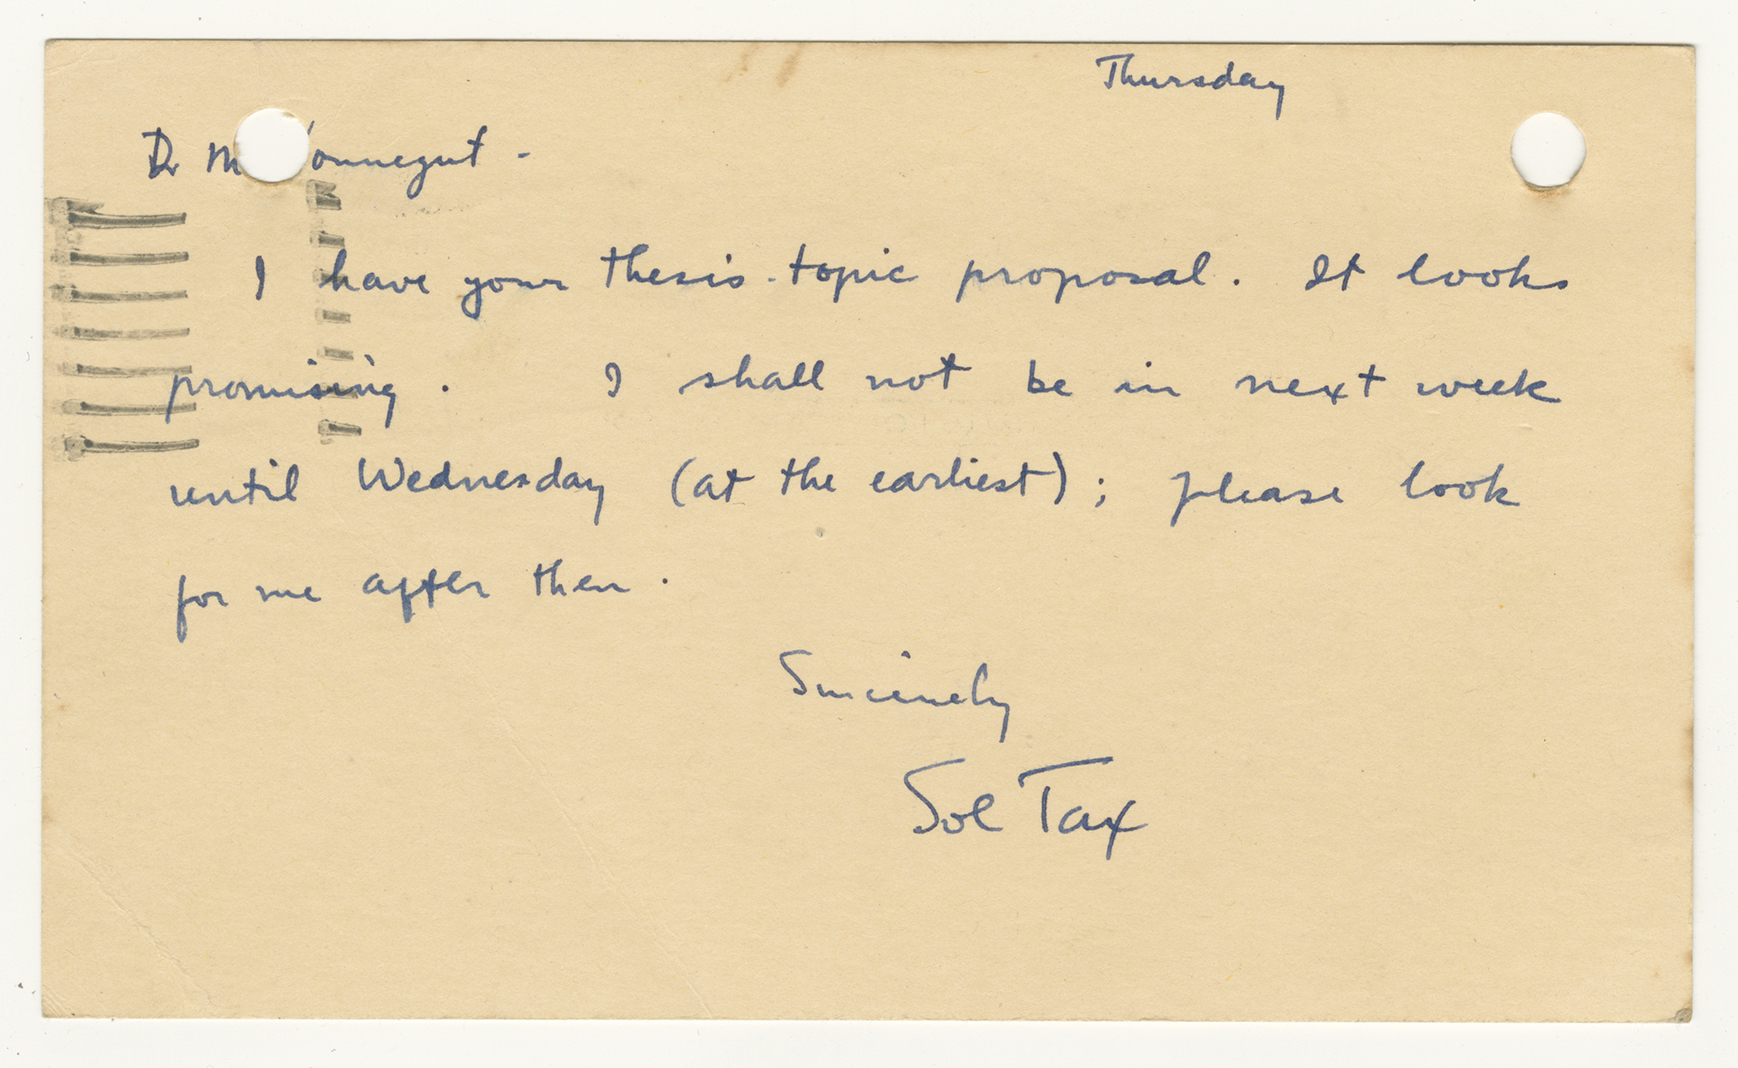 Sol Tax to Kurt Vonnegut, July 24, 1947.